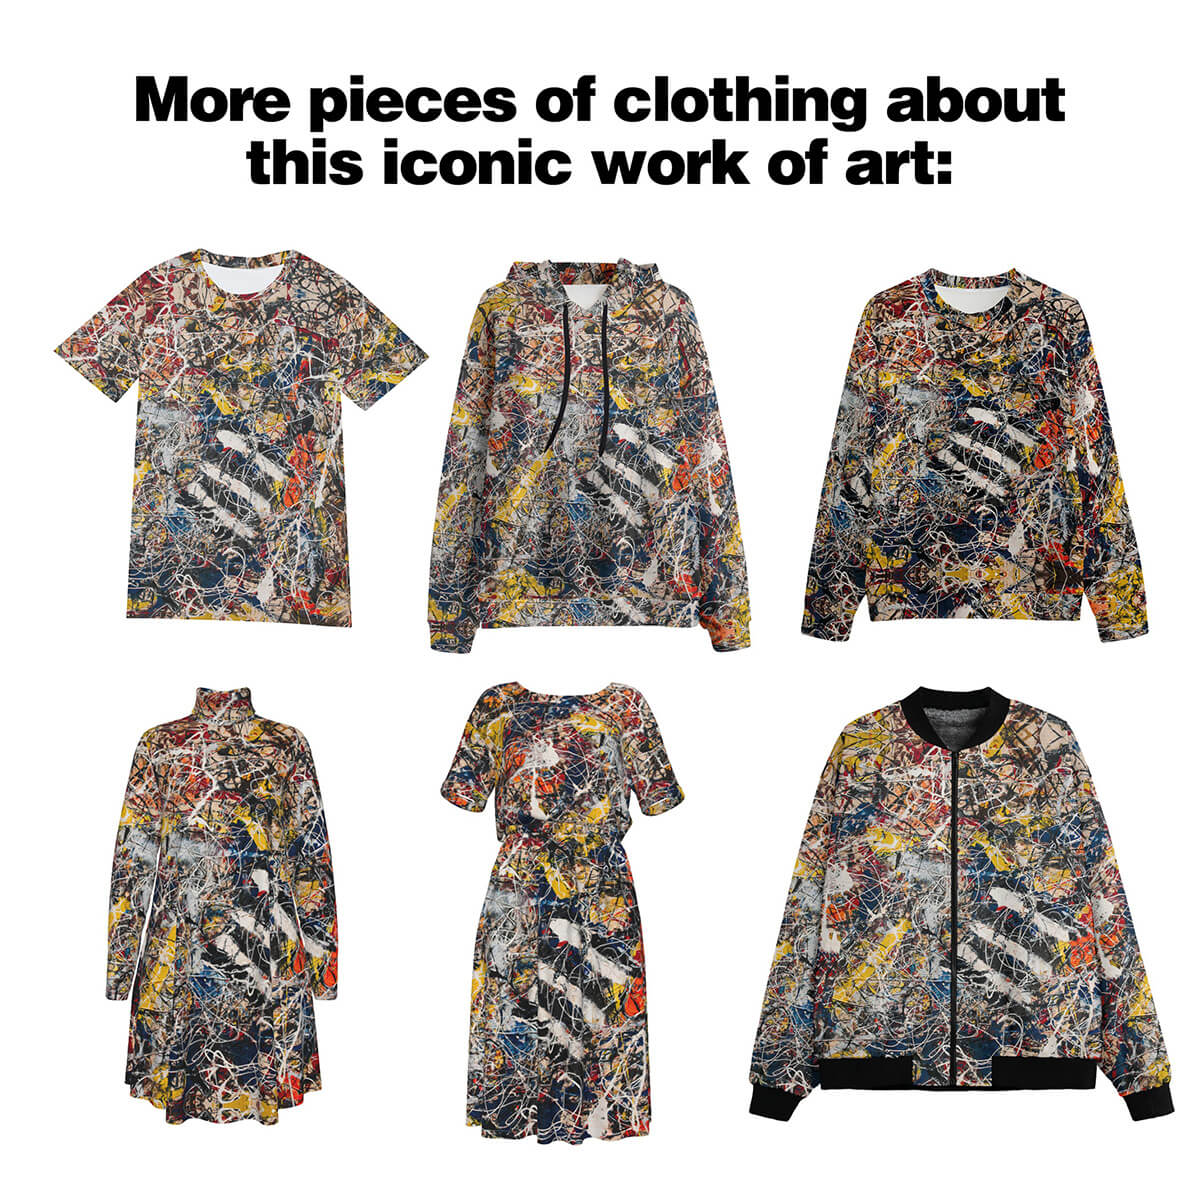 Hedvábný košilový oblek číslo 17A od Jacksona Pollocka